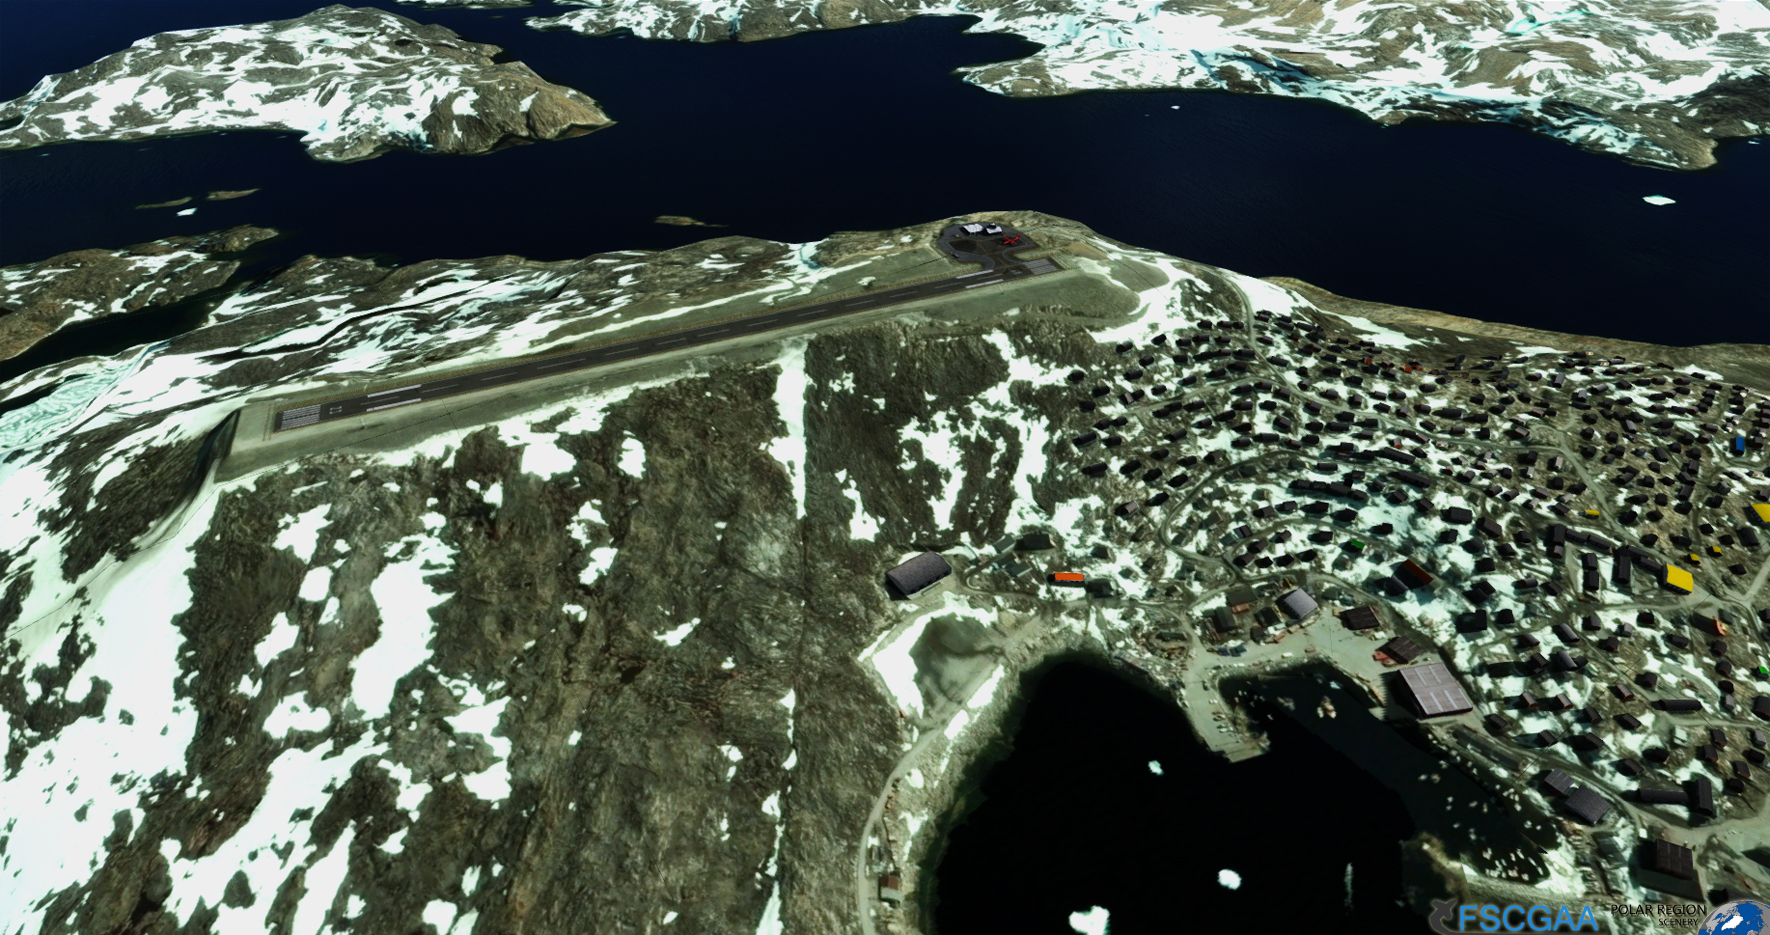 格陵兰岛乌佩纳维克机场 for P3Dv4 发布-3428 